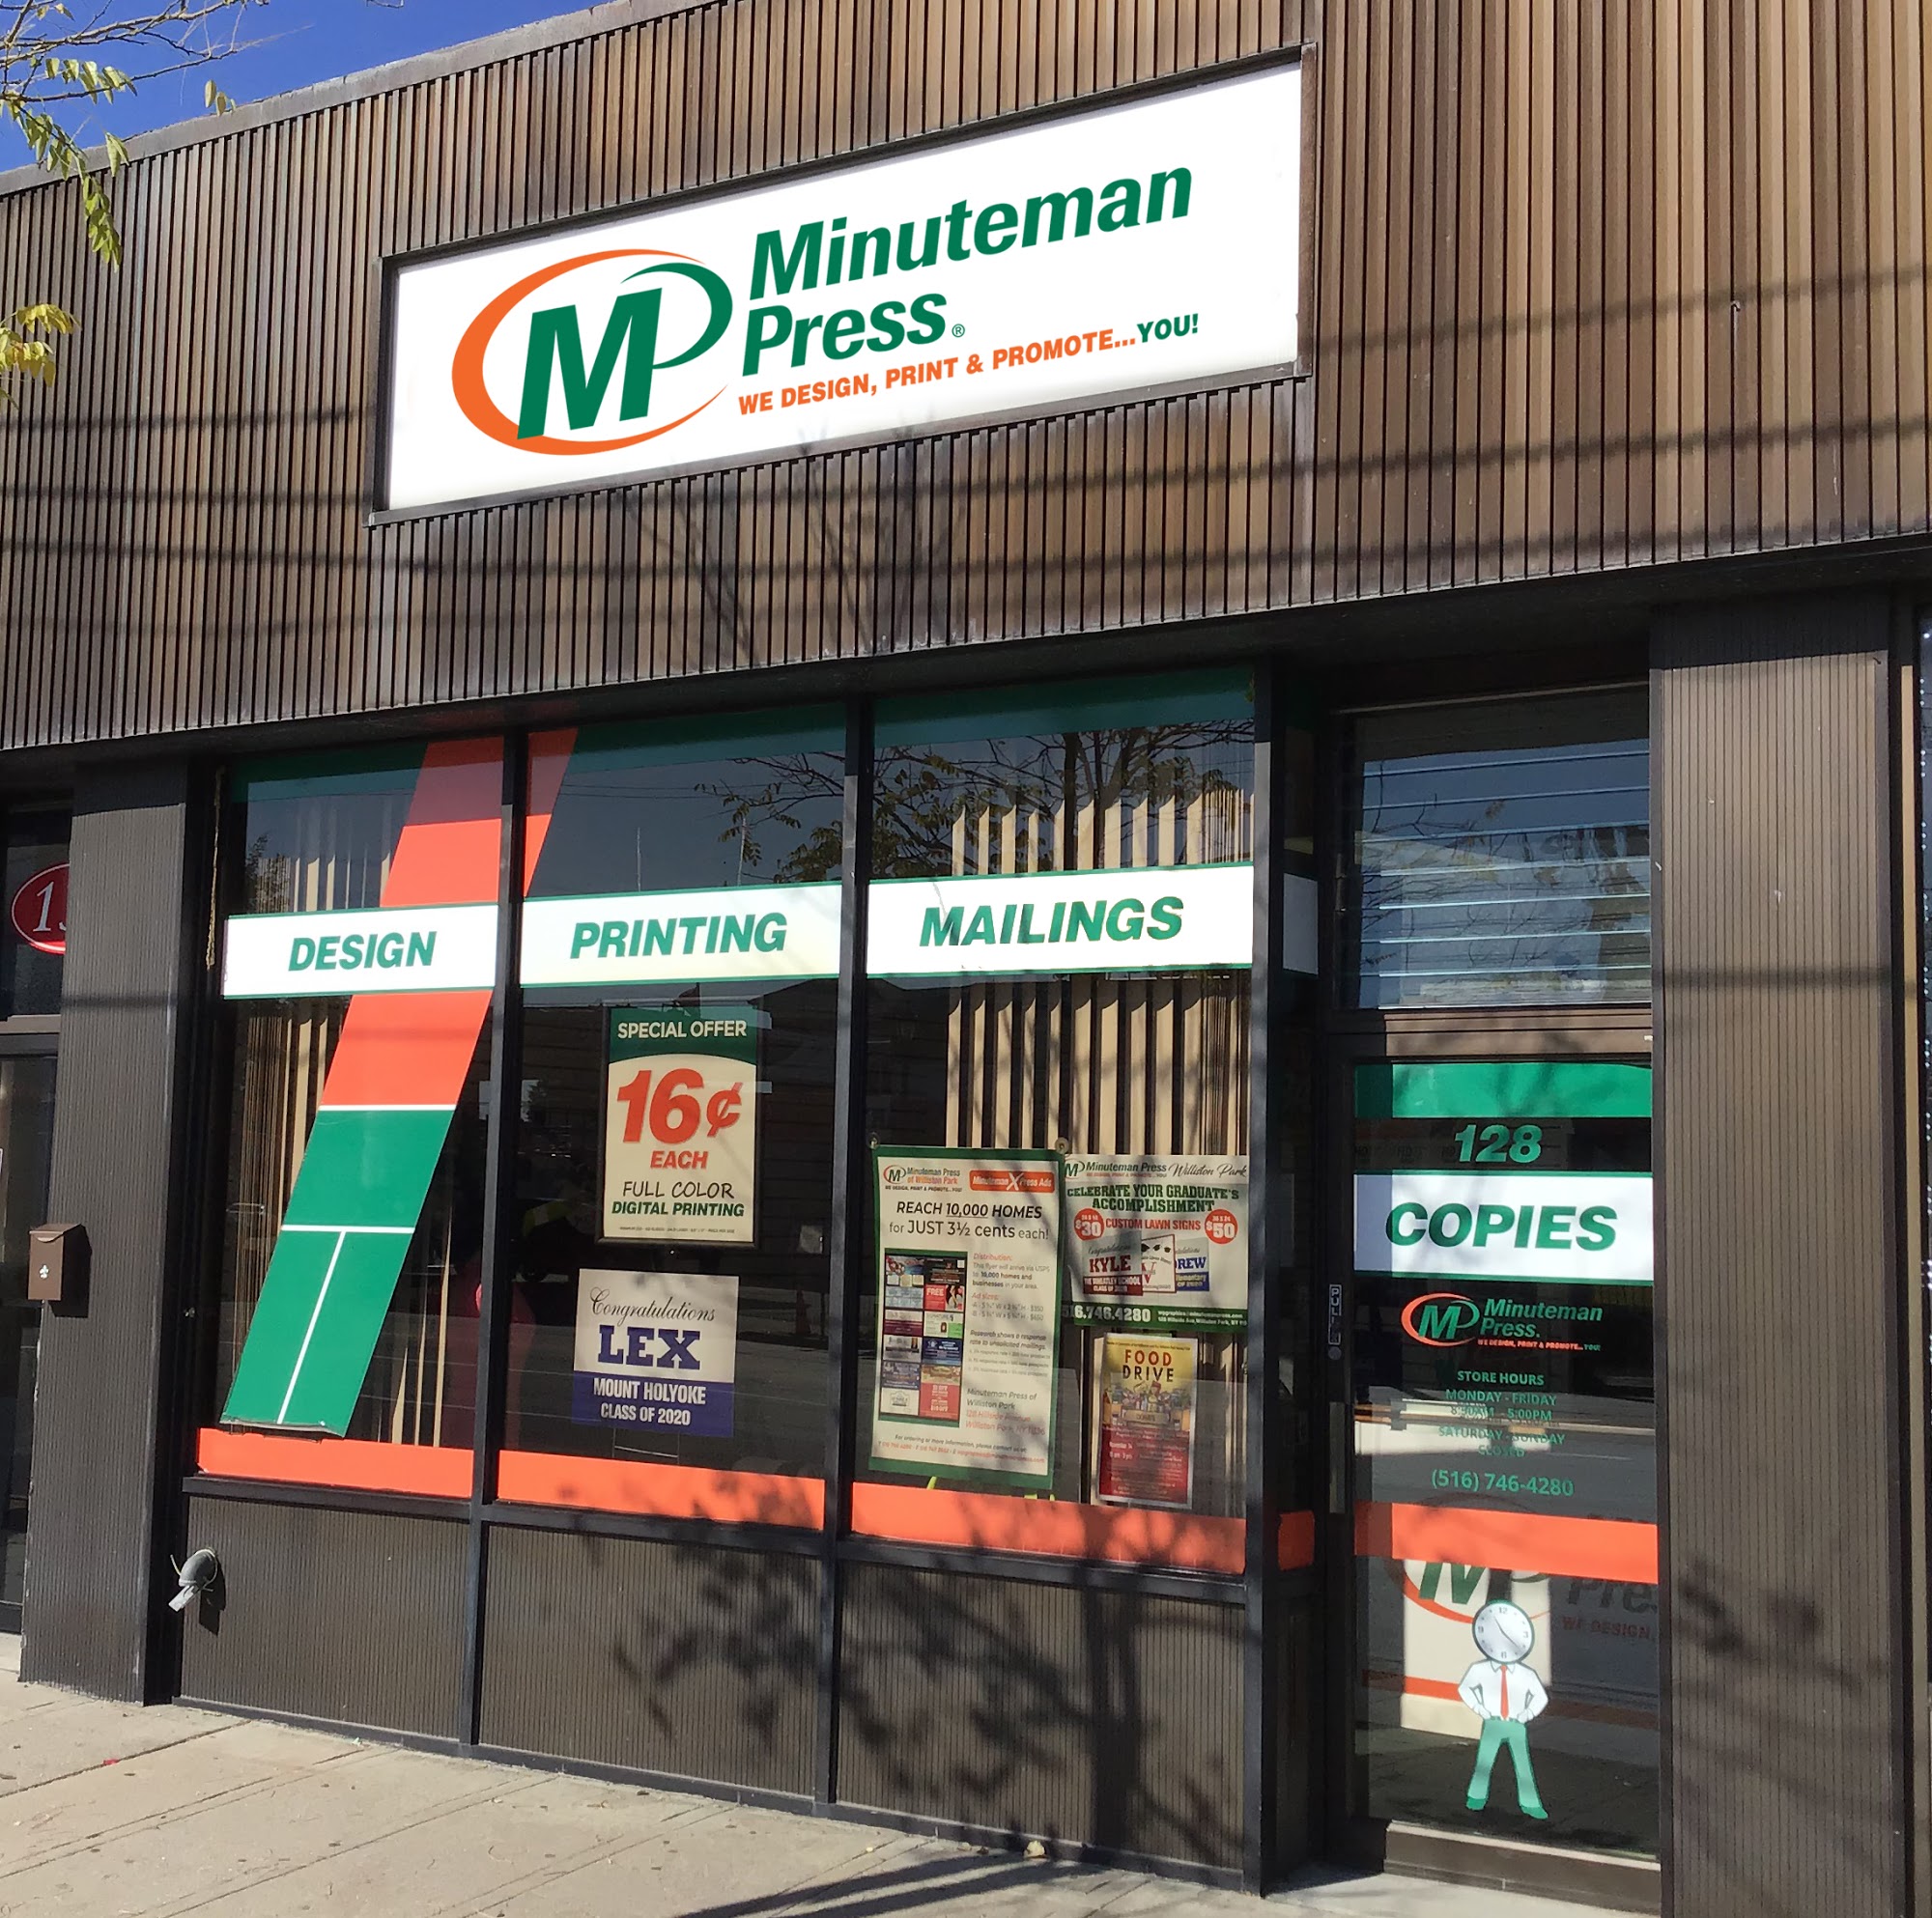 Minuteman Press of Williston Park